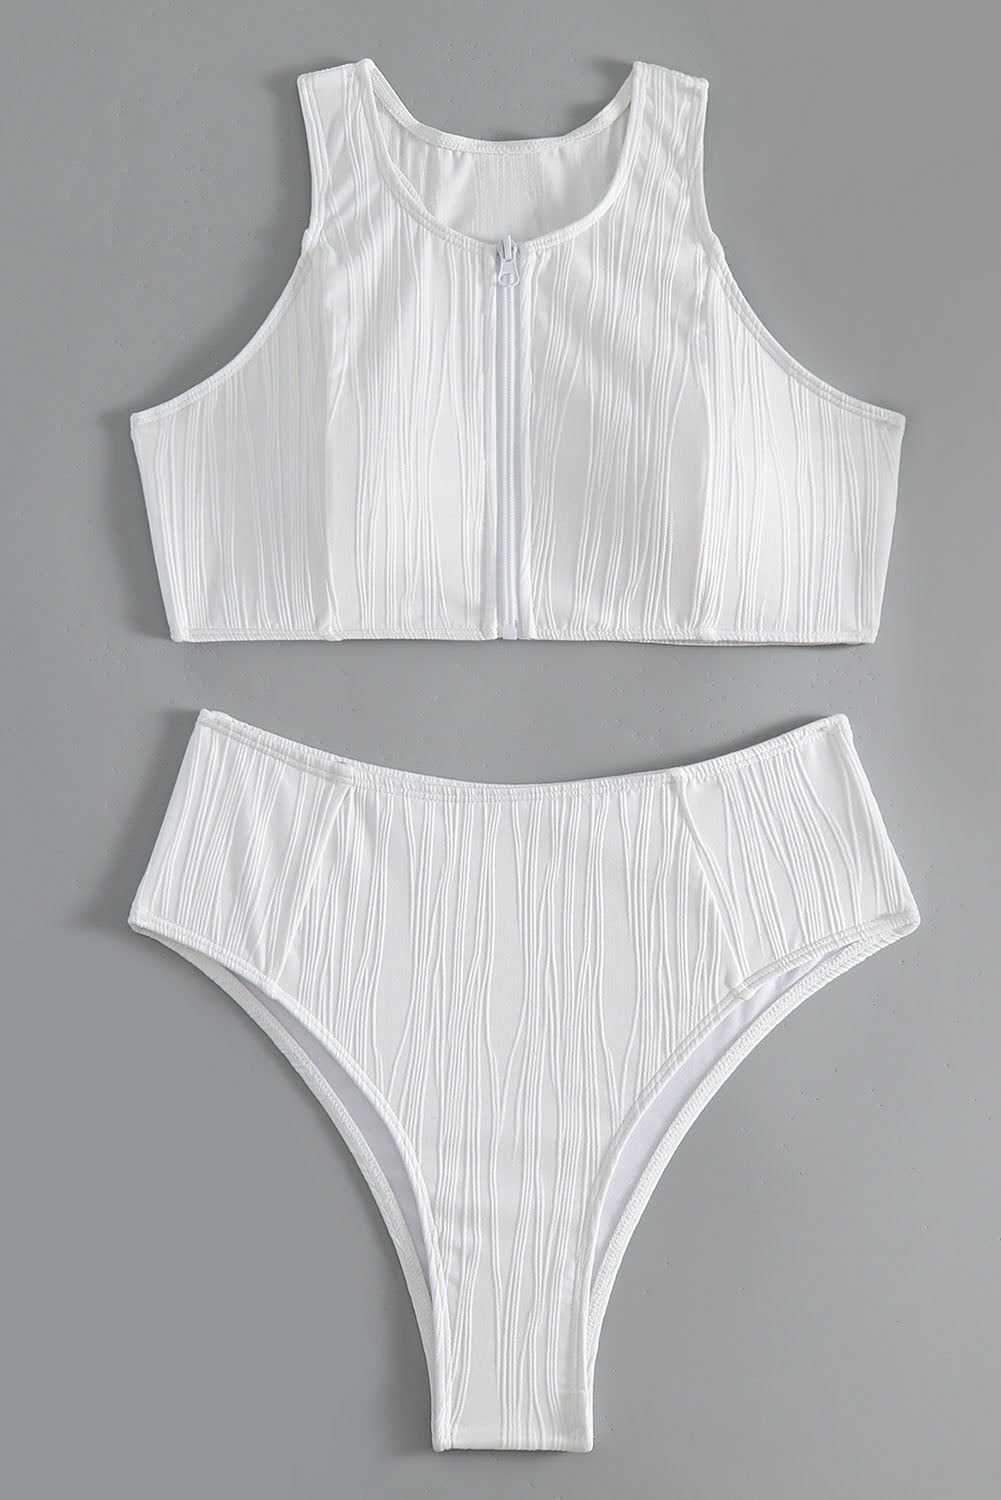 Haut de maillot de bain blanc texturé à fermeture éclair et dos nageur, bikini taille haute